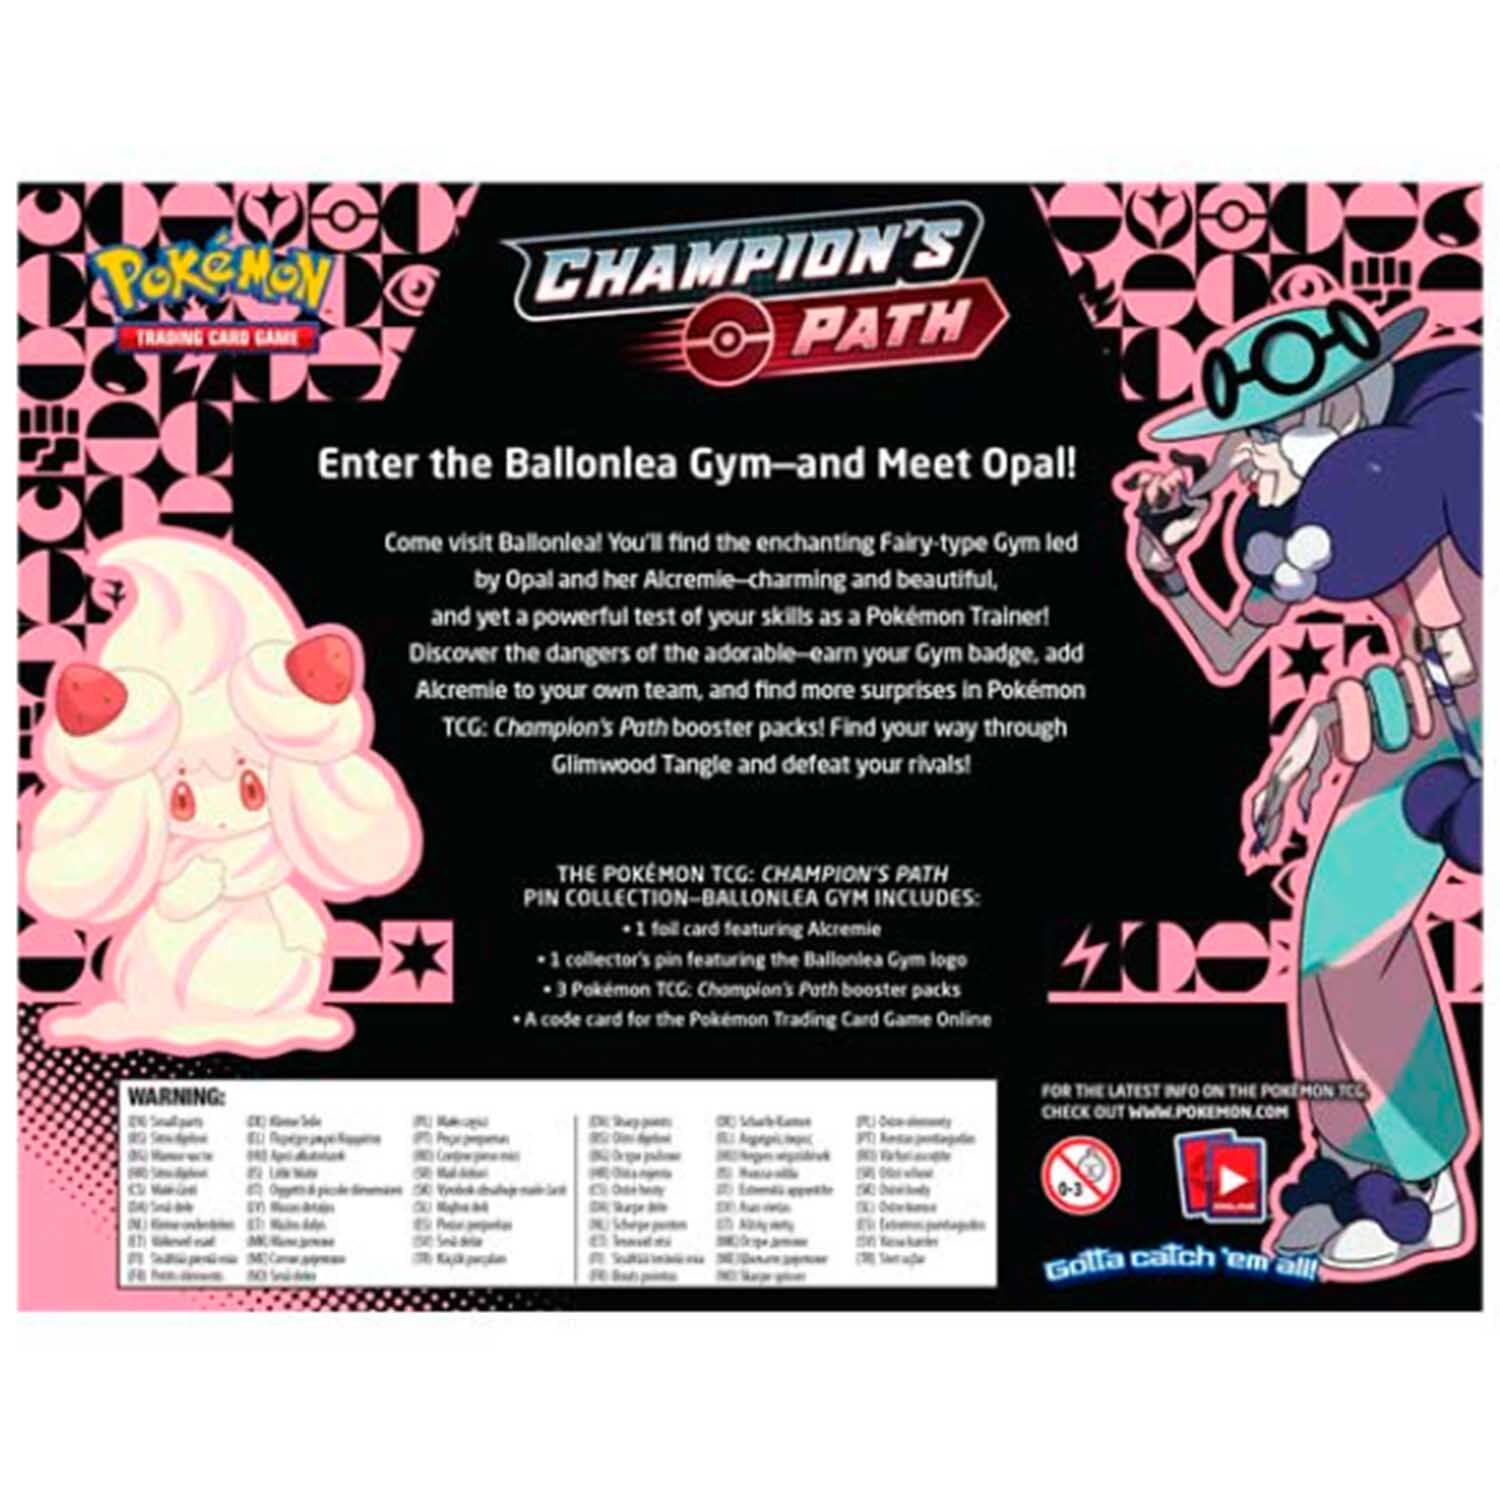 Pokémon Champion's Path Pin Collection Ballonlea Gym - EN